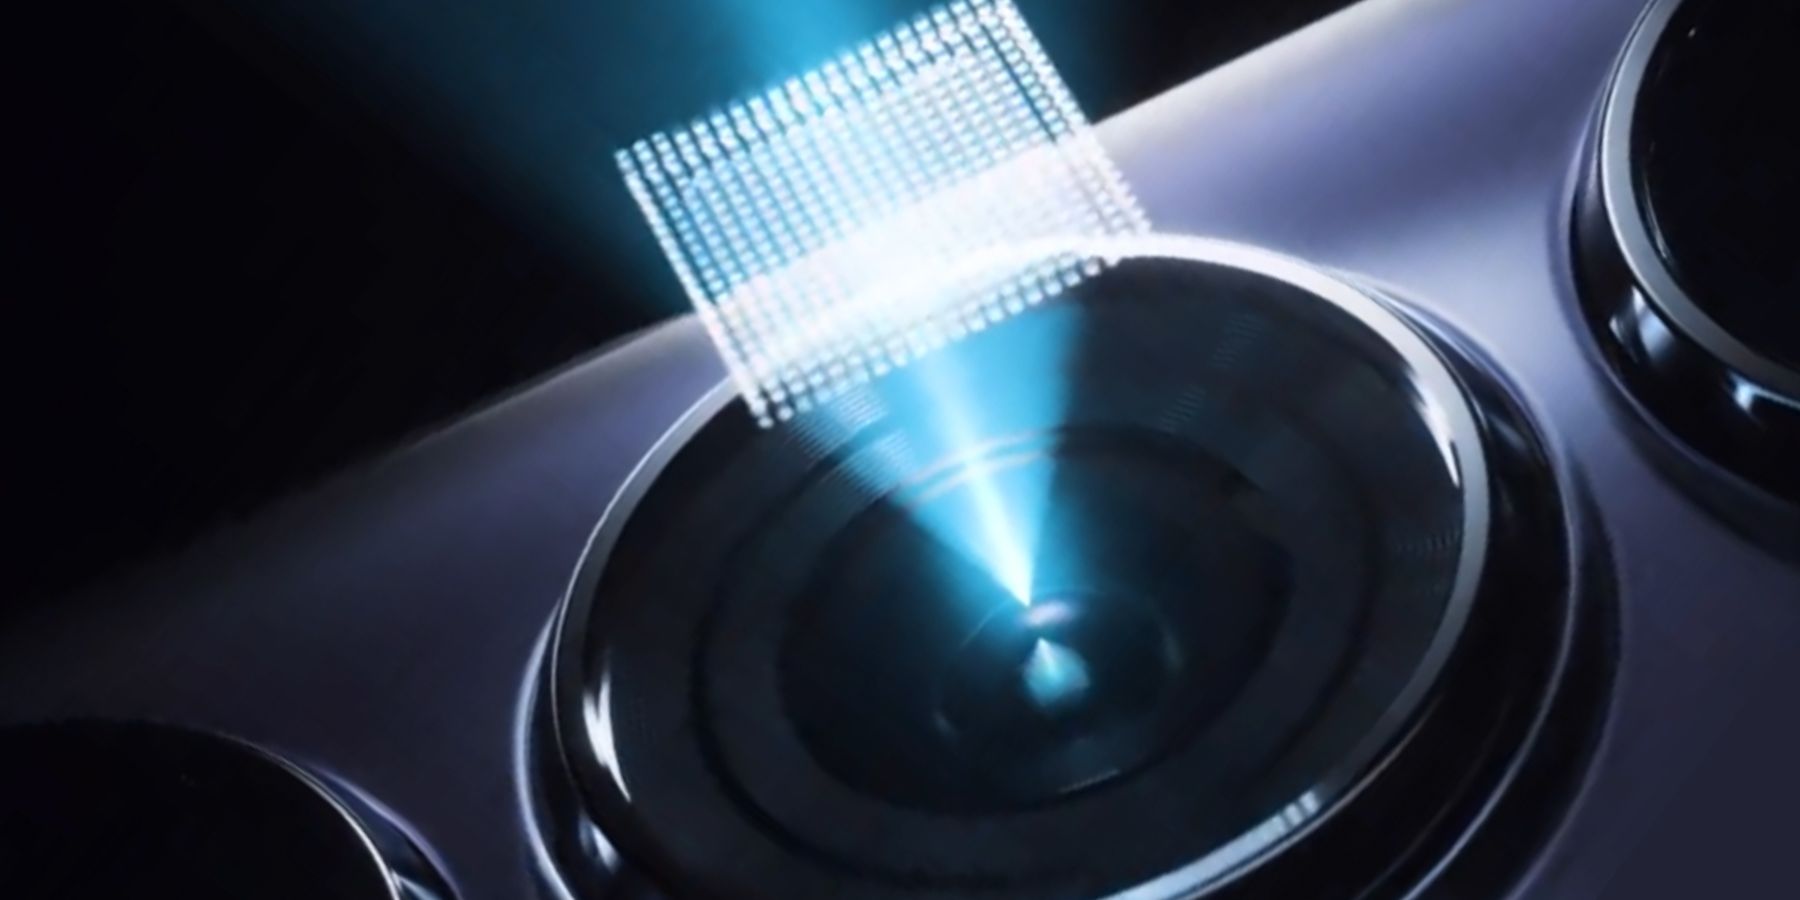 optical flare hardware fingerprint